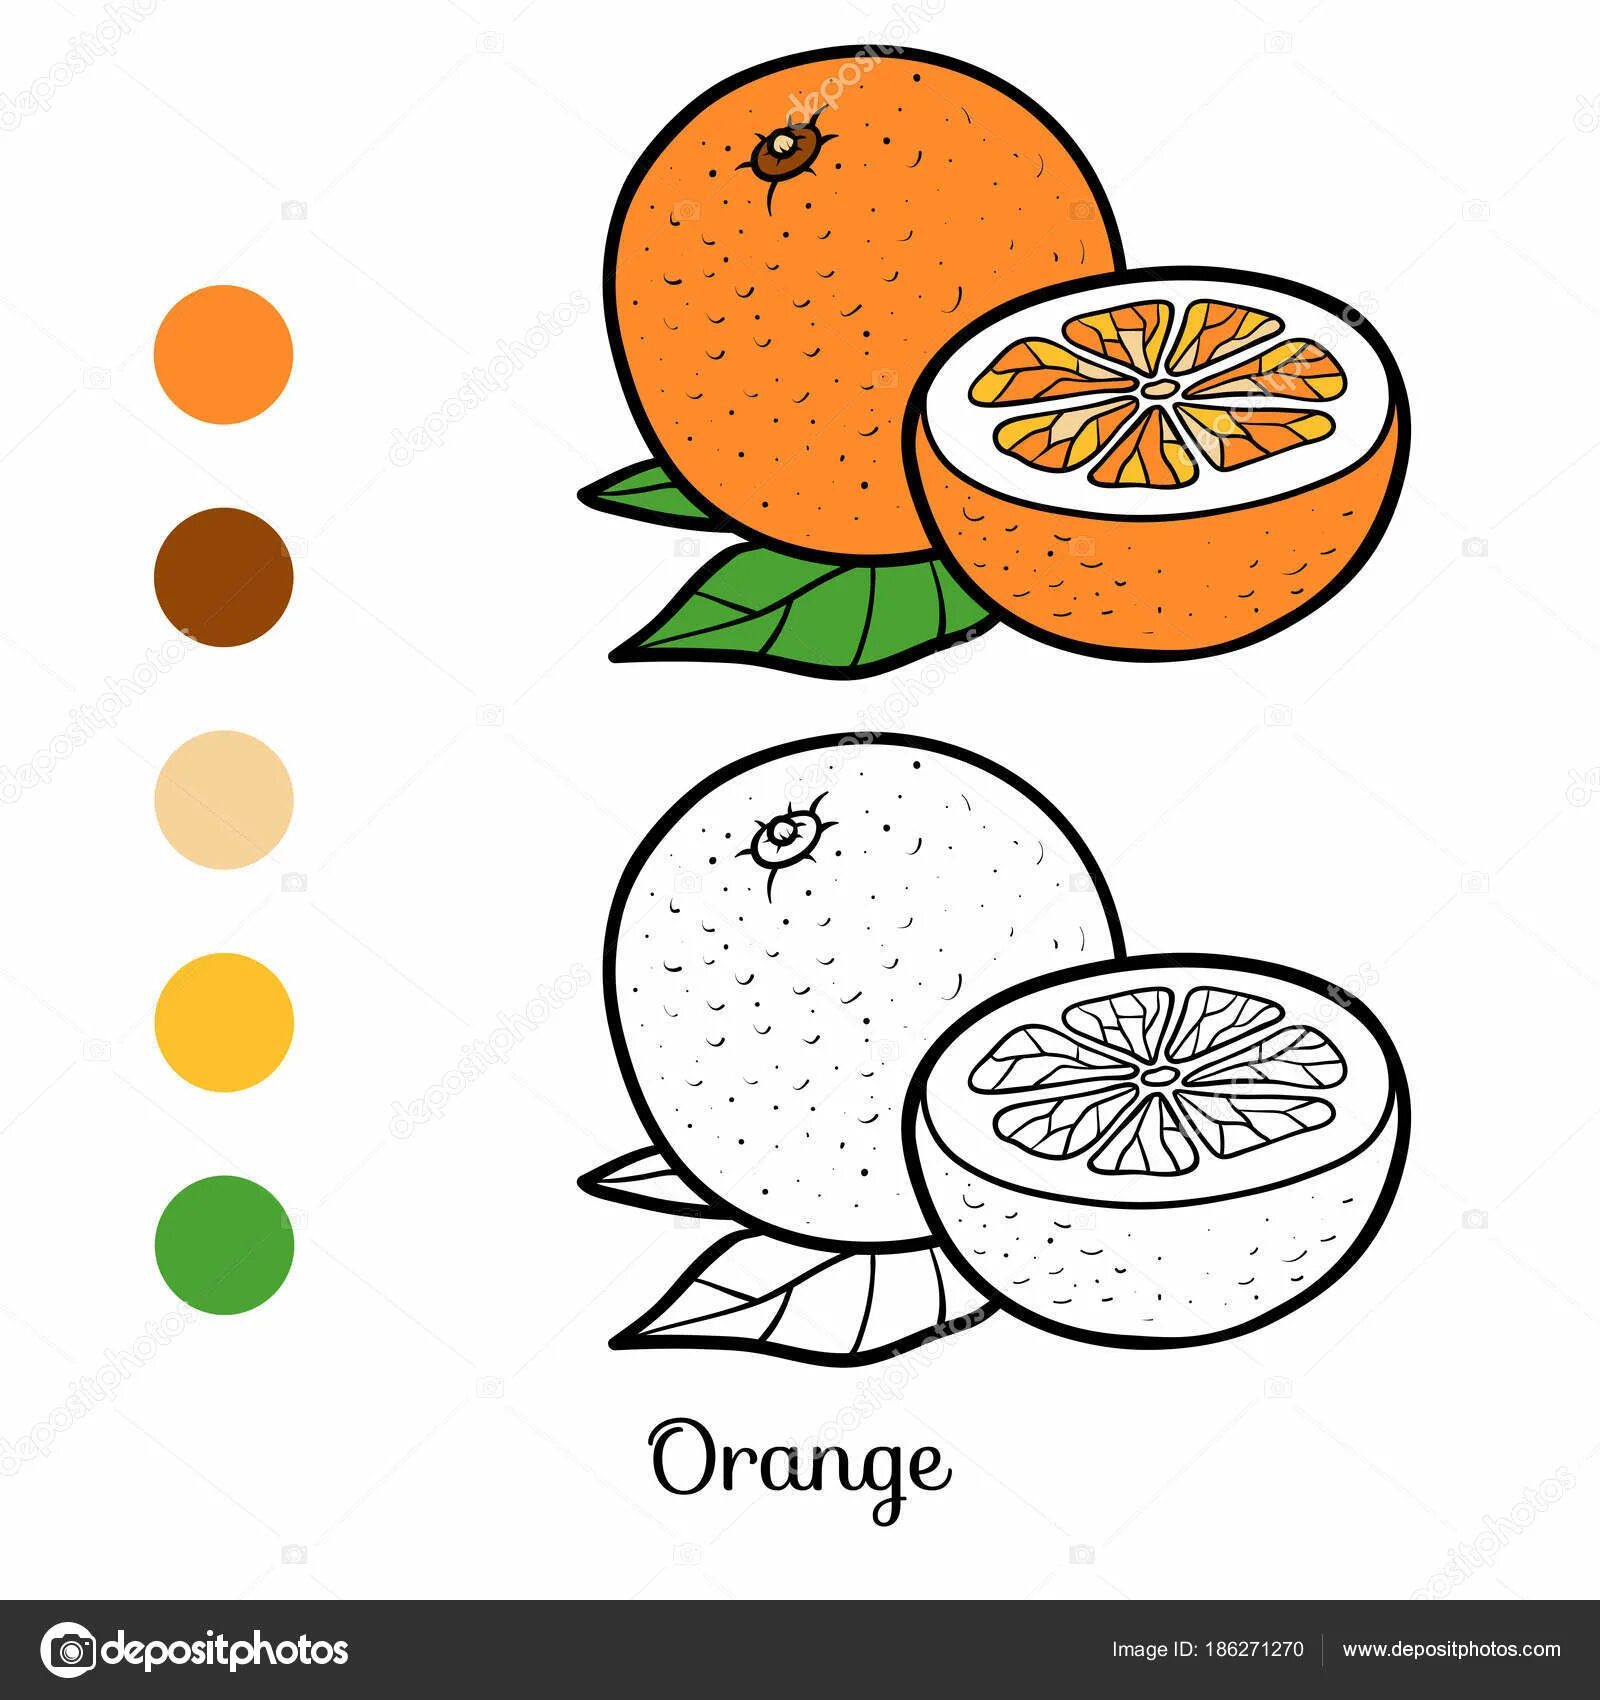 Orange #4